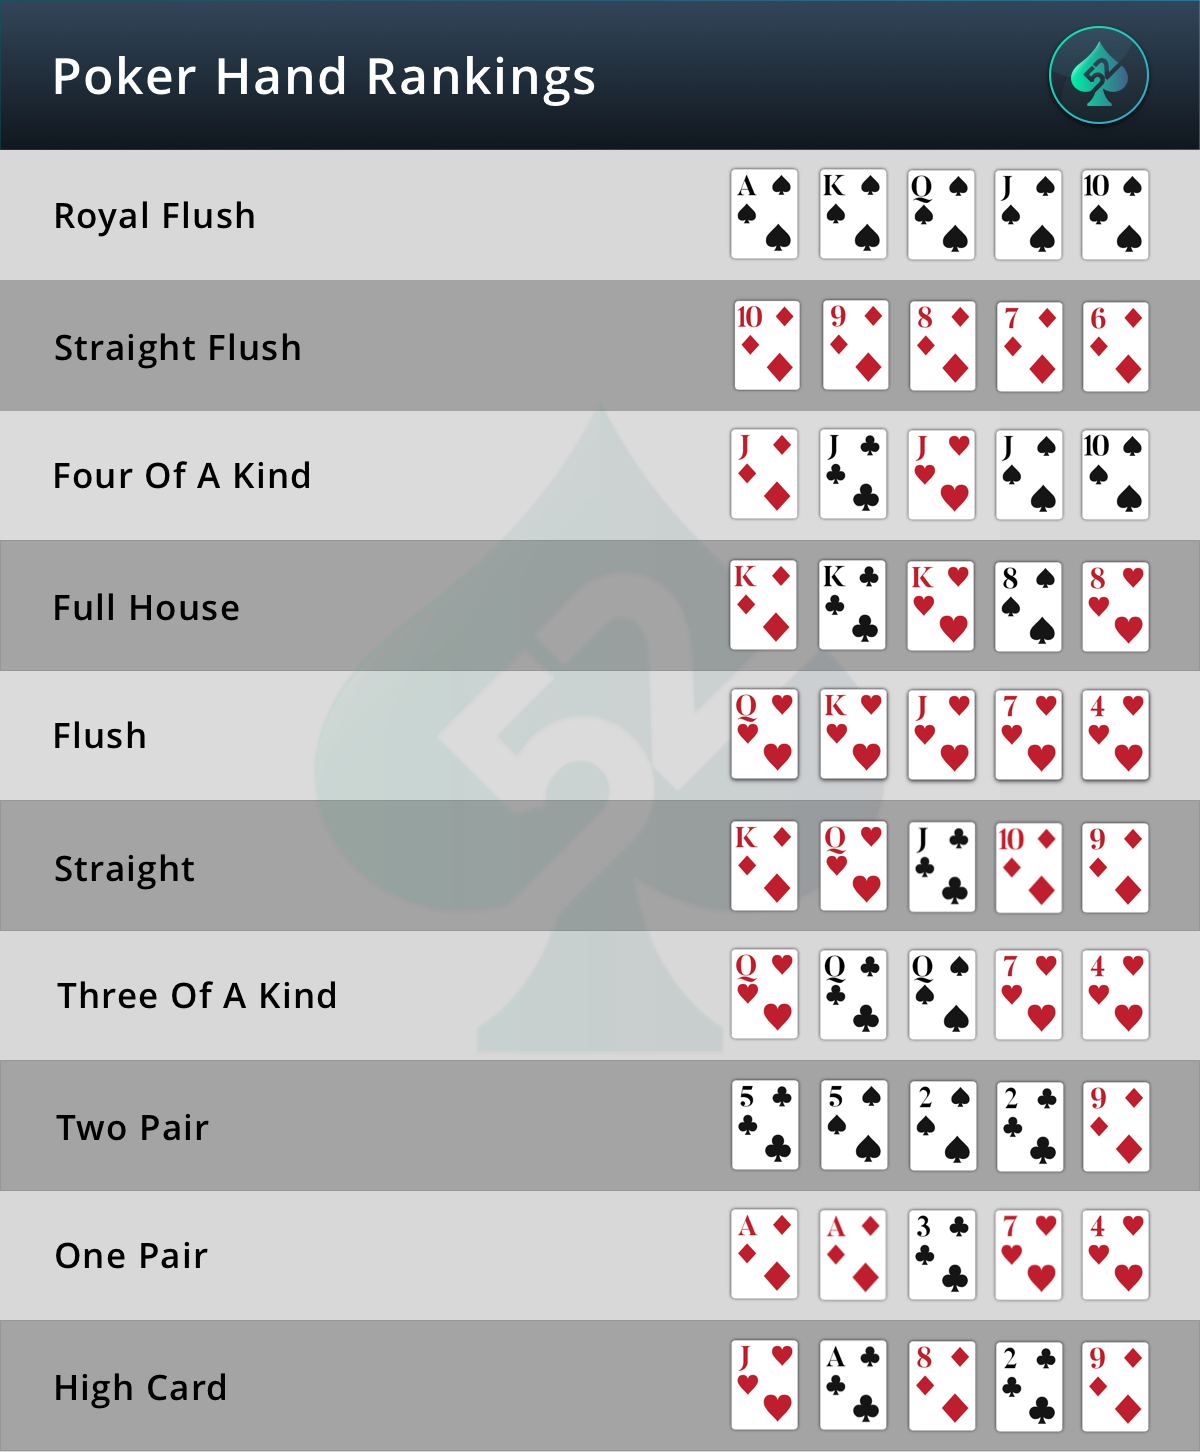 rank of poker hands